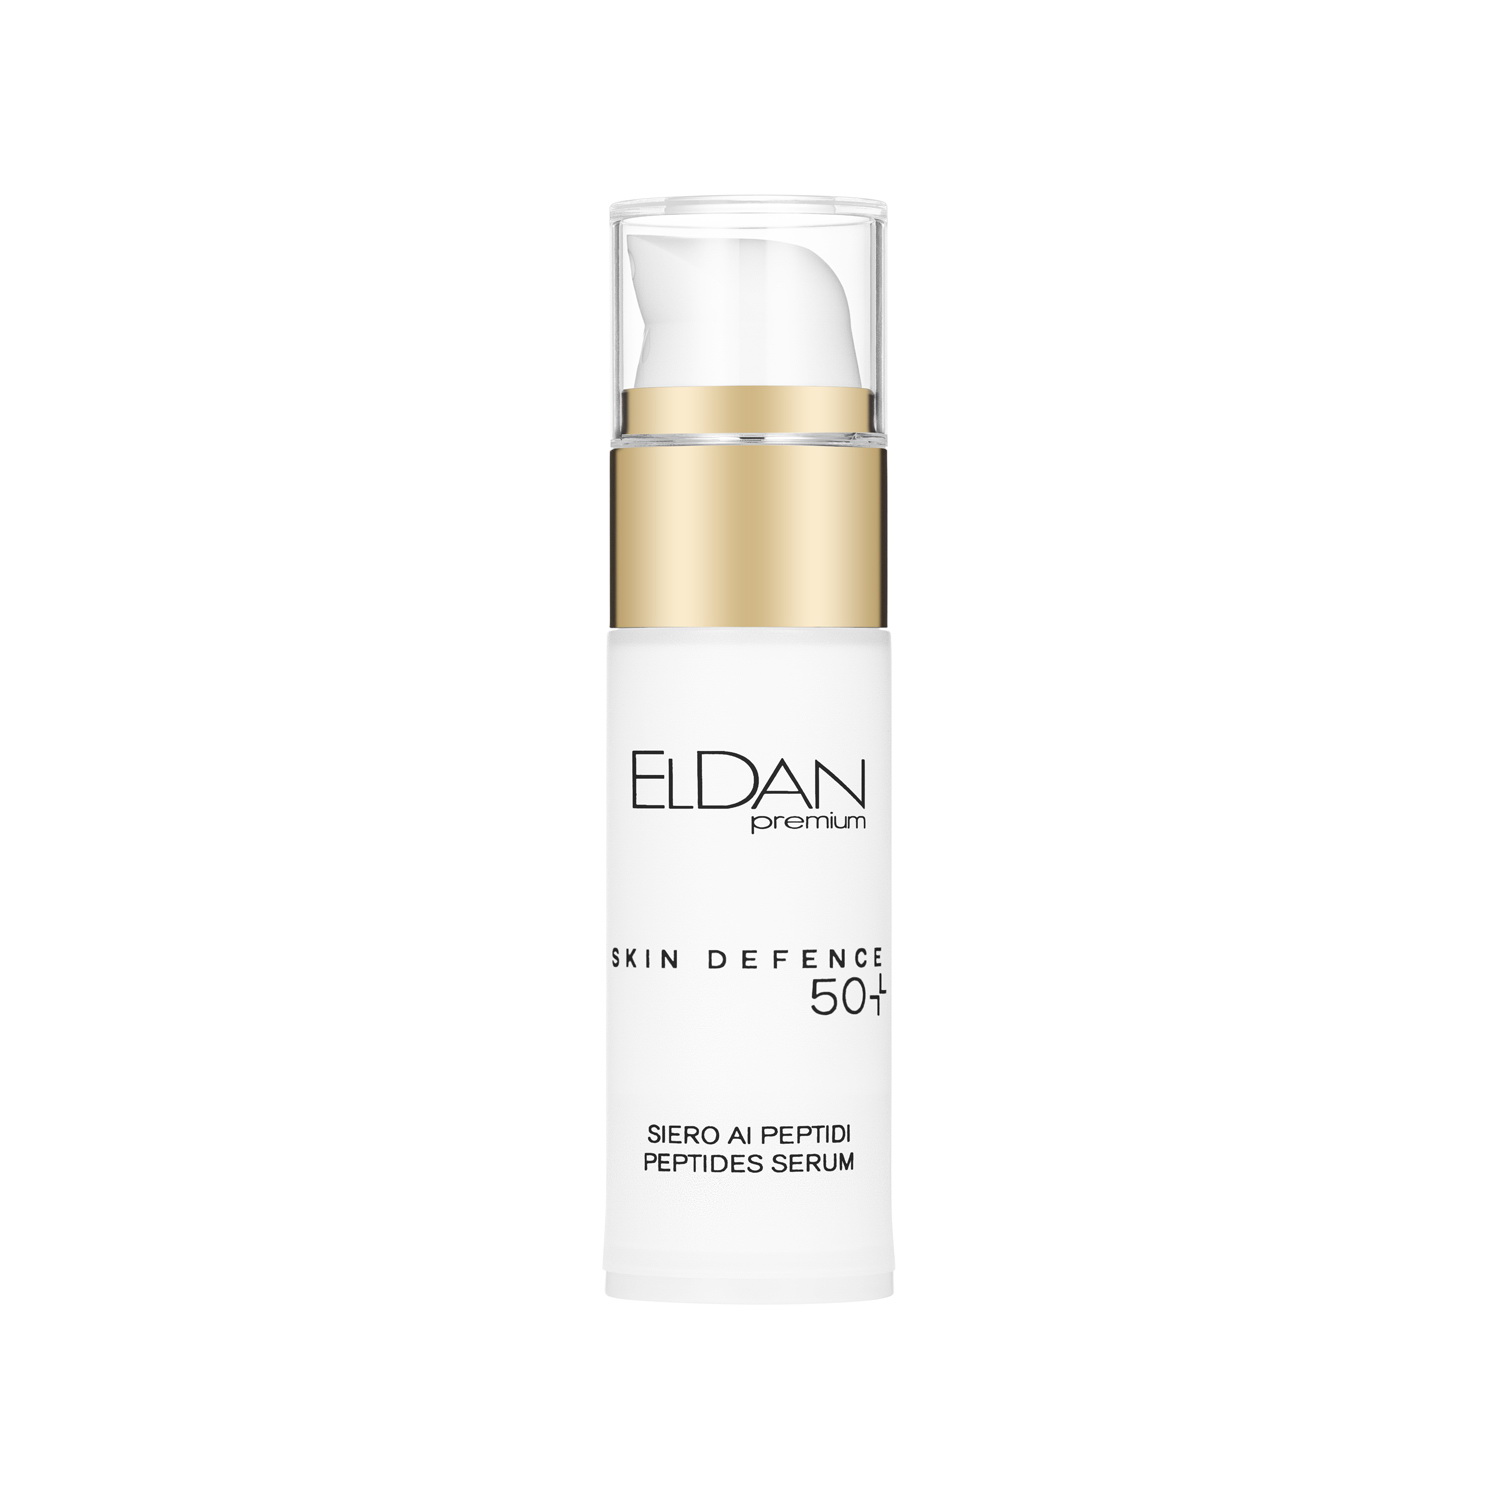 Сыворотка для лица ELDAN Premium Pepto Skin Defence 50+ пептидная, антивозрастная, 30 мл пептидная сыворотка 50